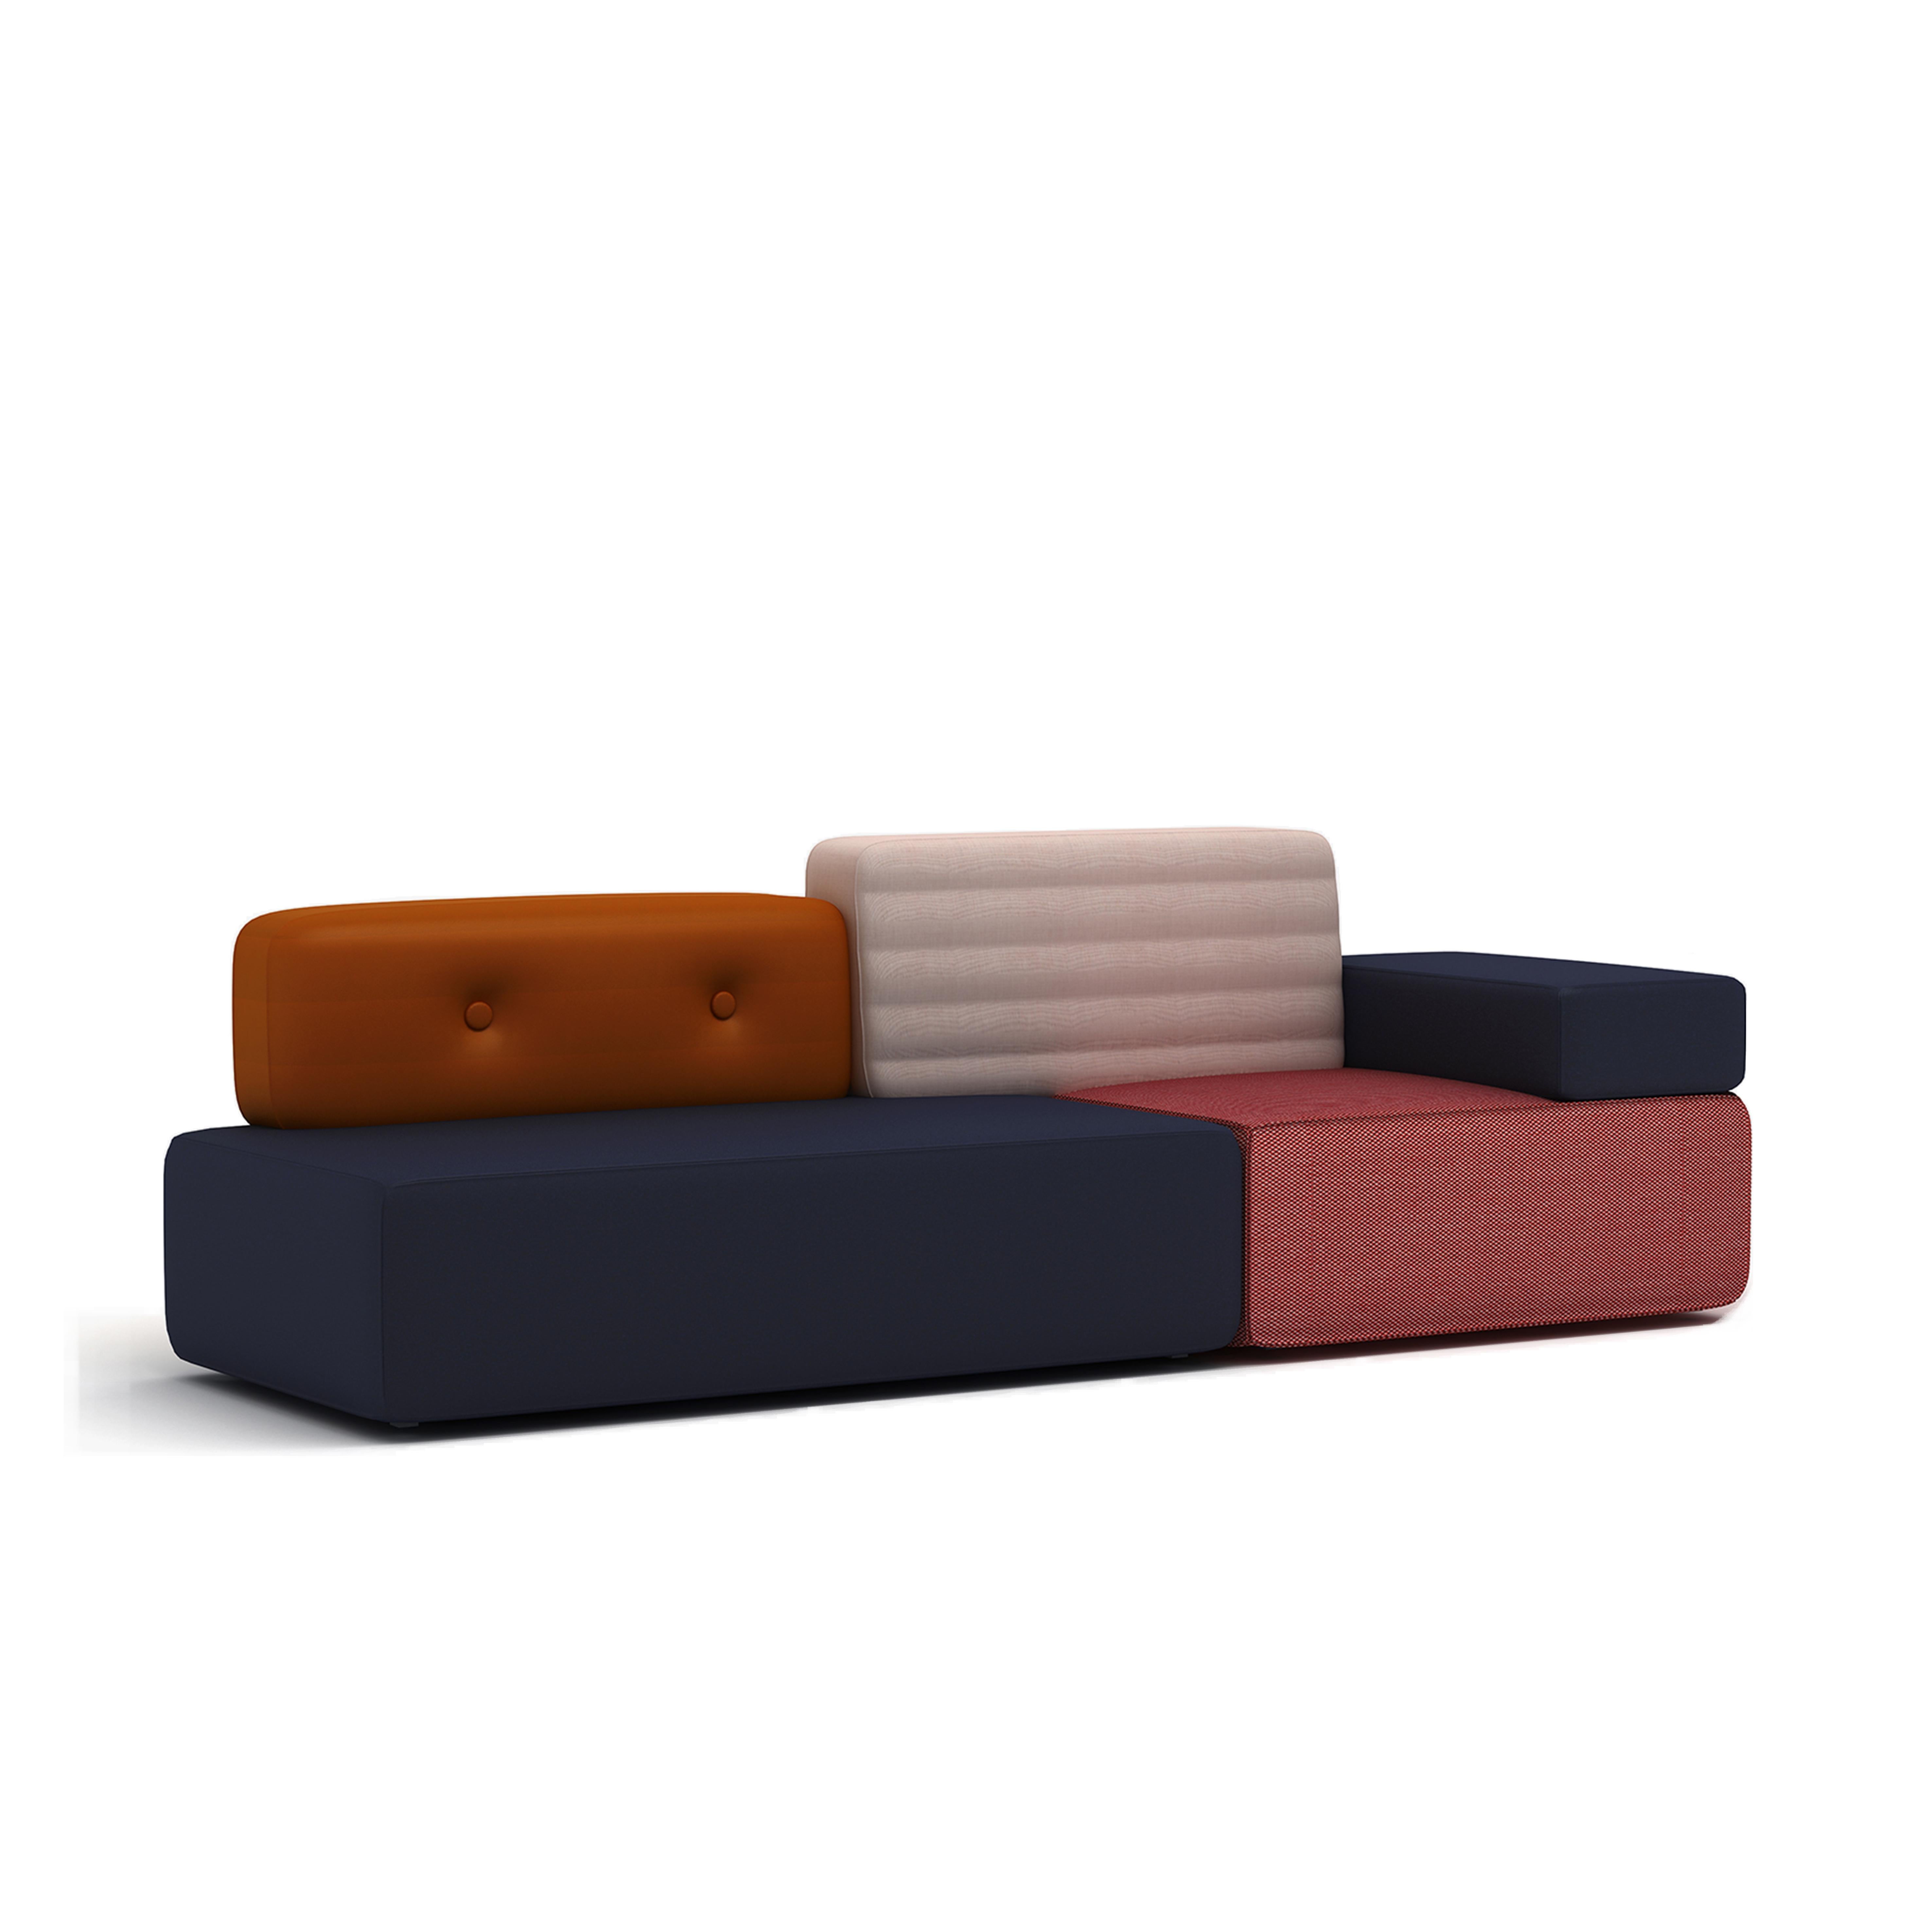 Das Combo-Sofa wird aus mehreren Stoff- und Lederklassen hergestellt. Es gibt 3 Stoffgruppen mit unterschiedlichen Preisen, Muster sind auf Anfrage erhältlich.

Gruppe A: 
material: importierte Wolle + importiertes Leder 
farbe: marineblau+rosa /